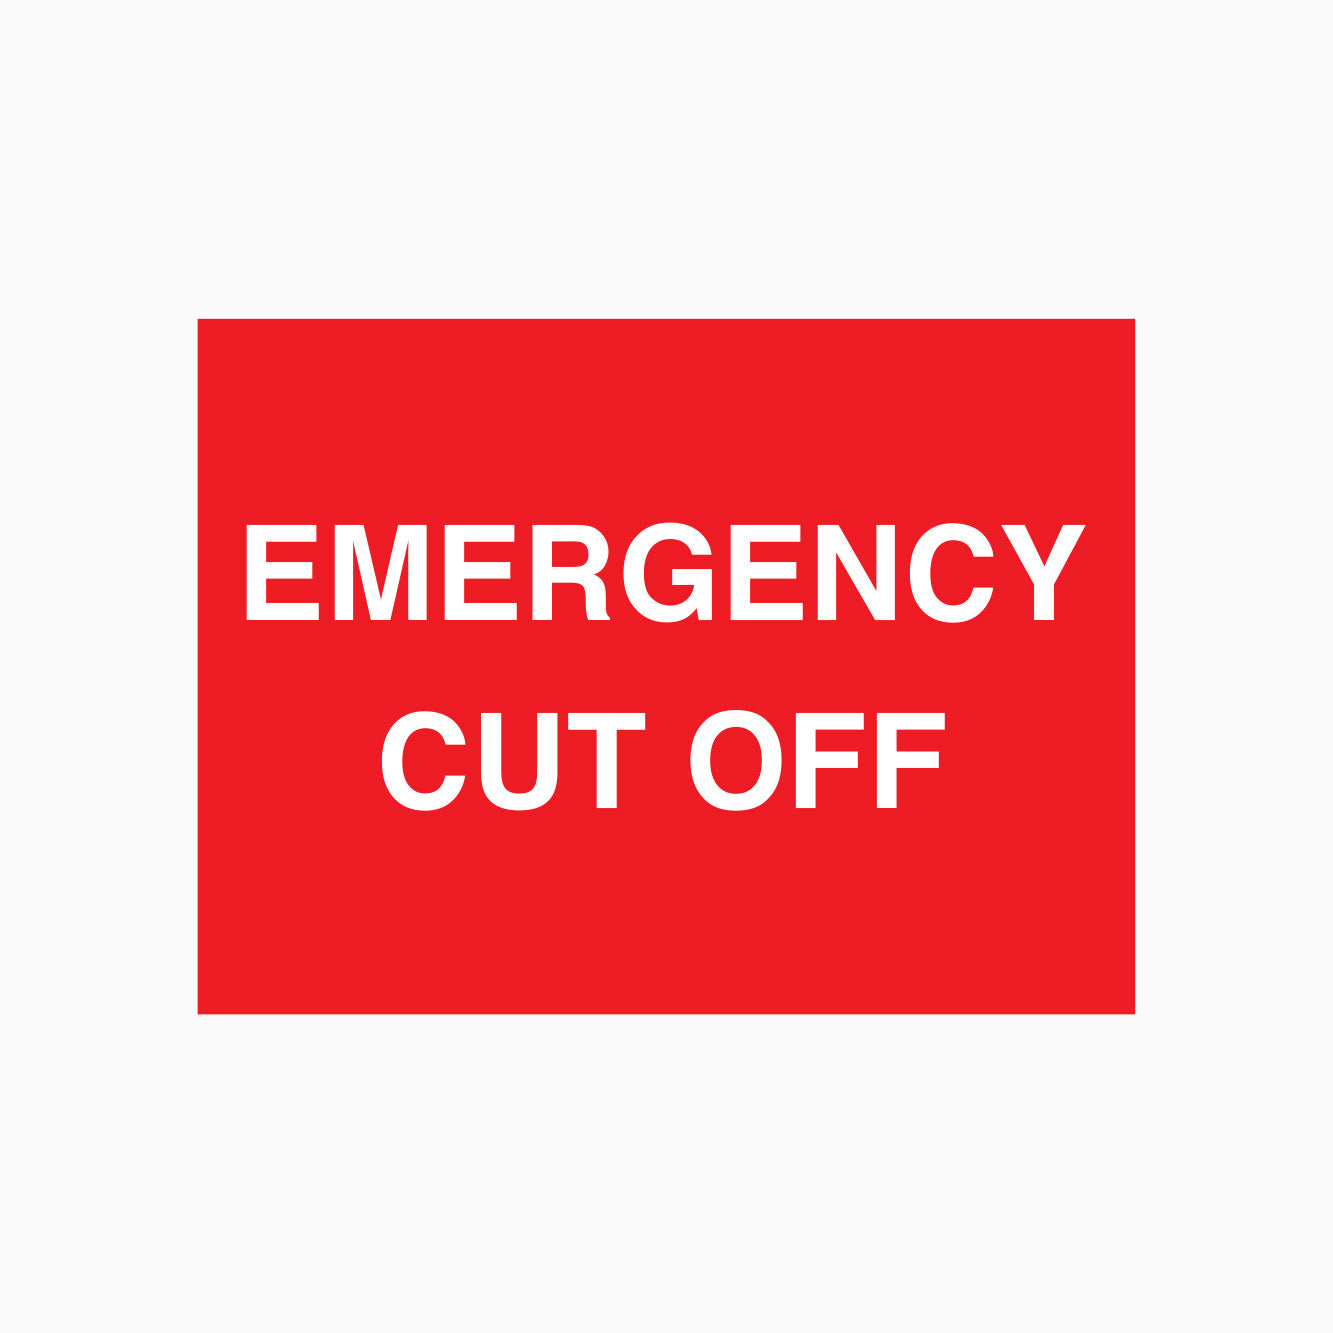 EMERGENCY CUT OFF SIGN